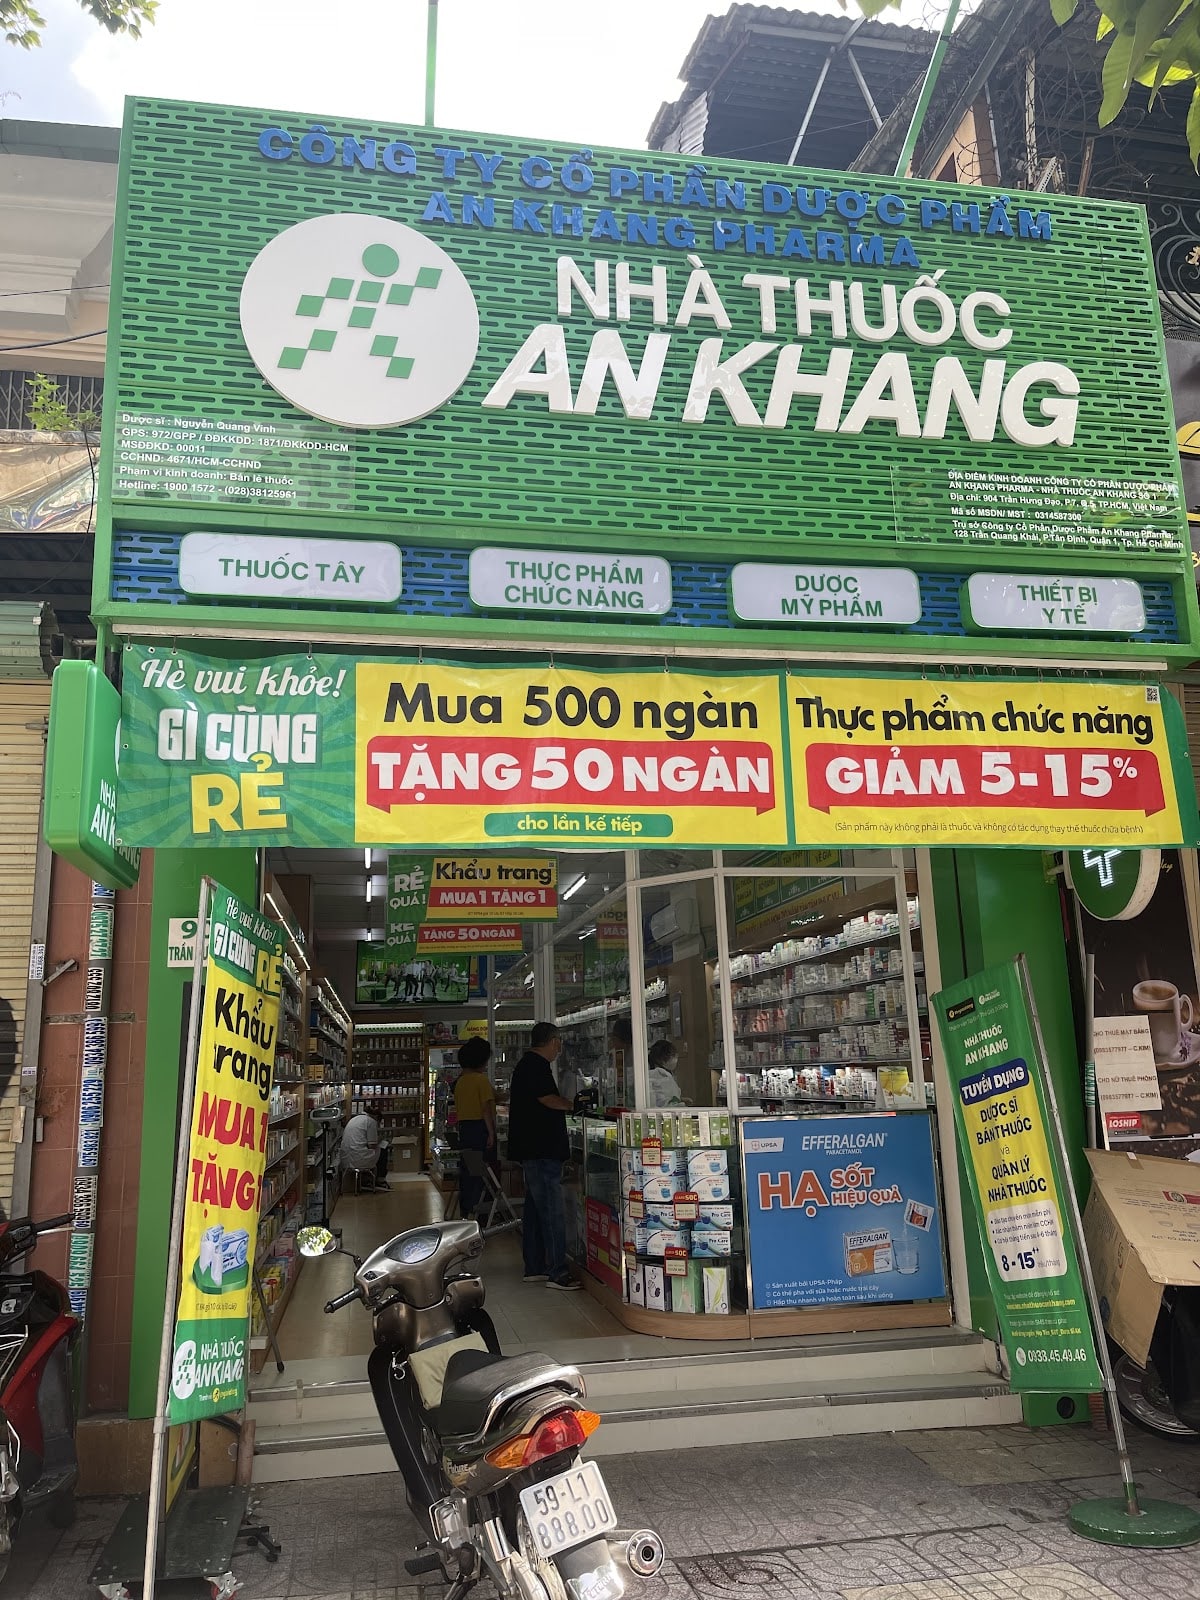 904 Trần Hưng Đạo, P. 7, Quận 5, TP. Hồ Chí Minh